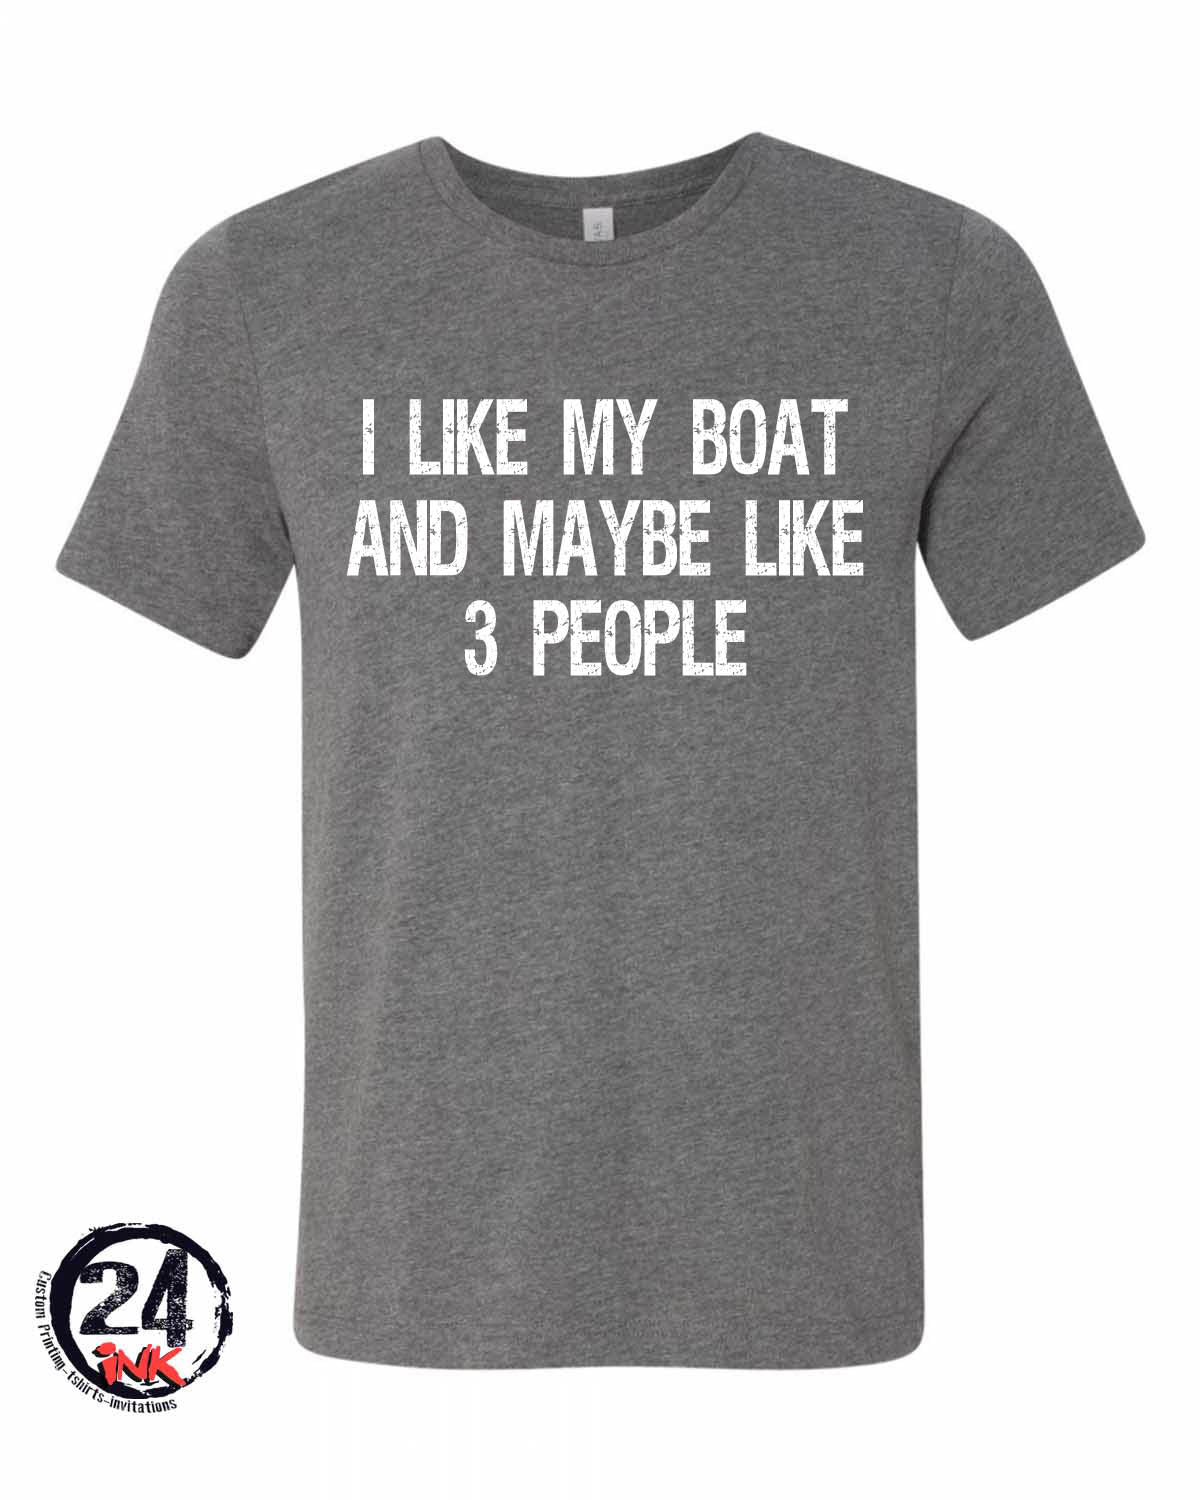 Boating shirt